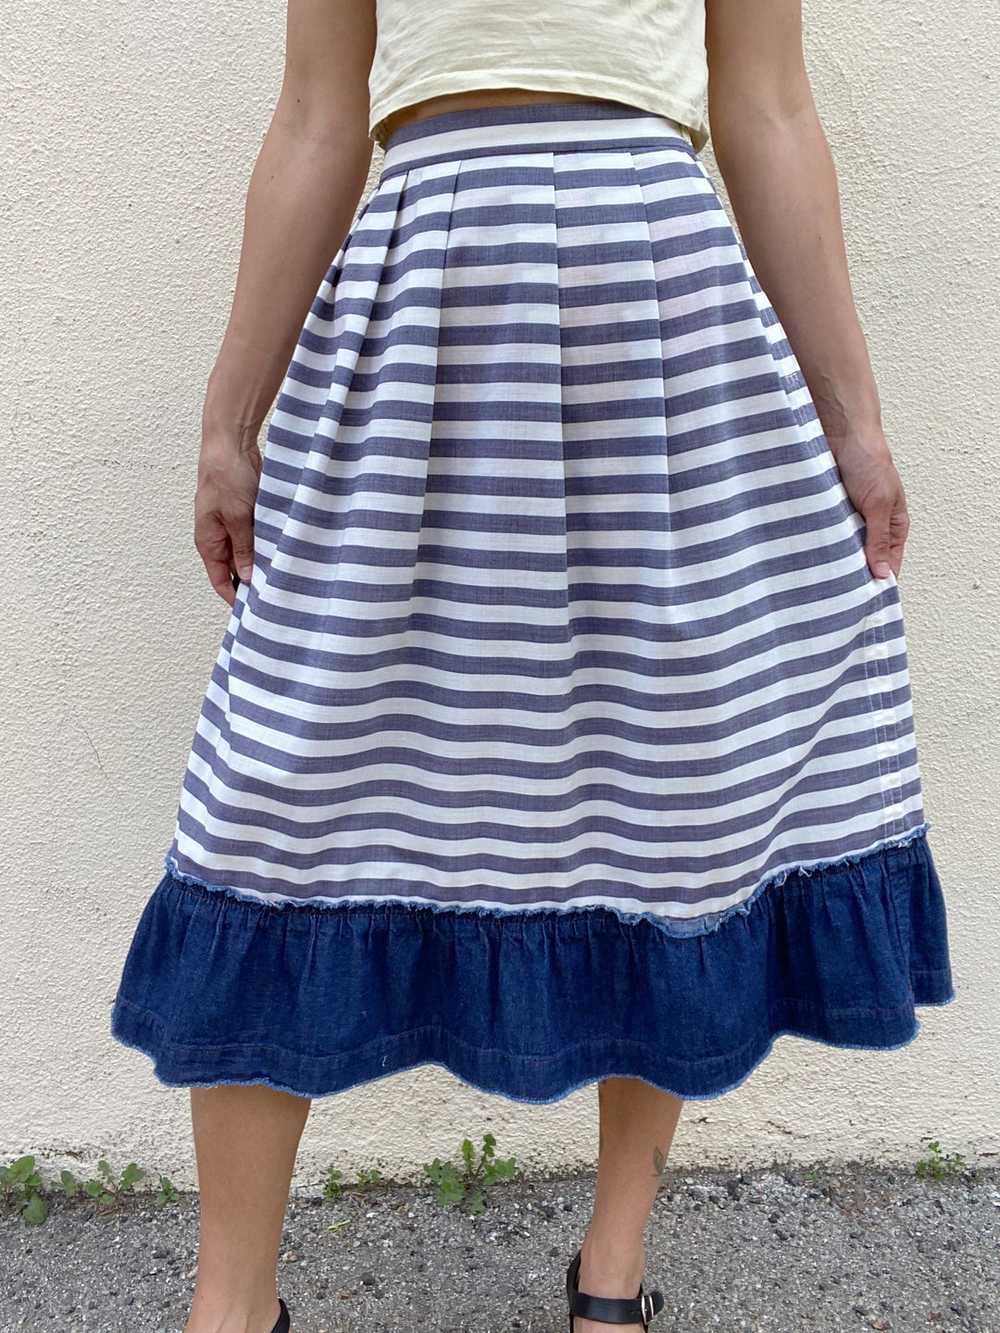 Comme De Garcons Striped Cotton Skirt - image 1